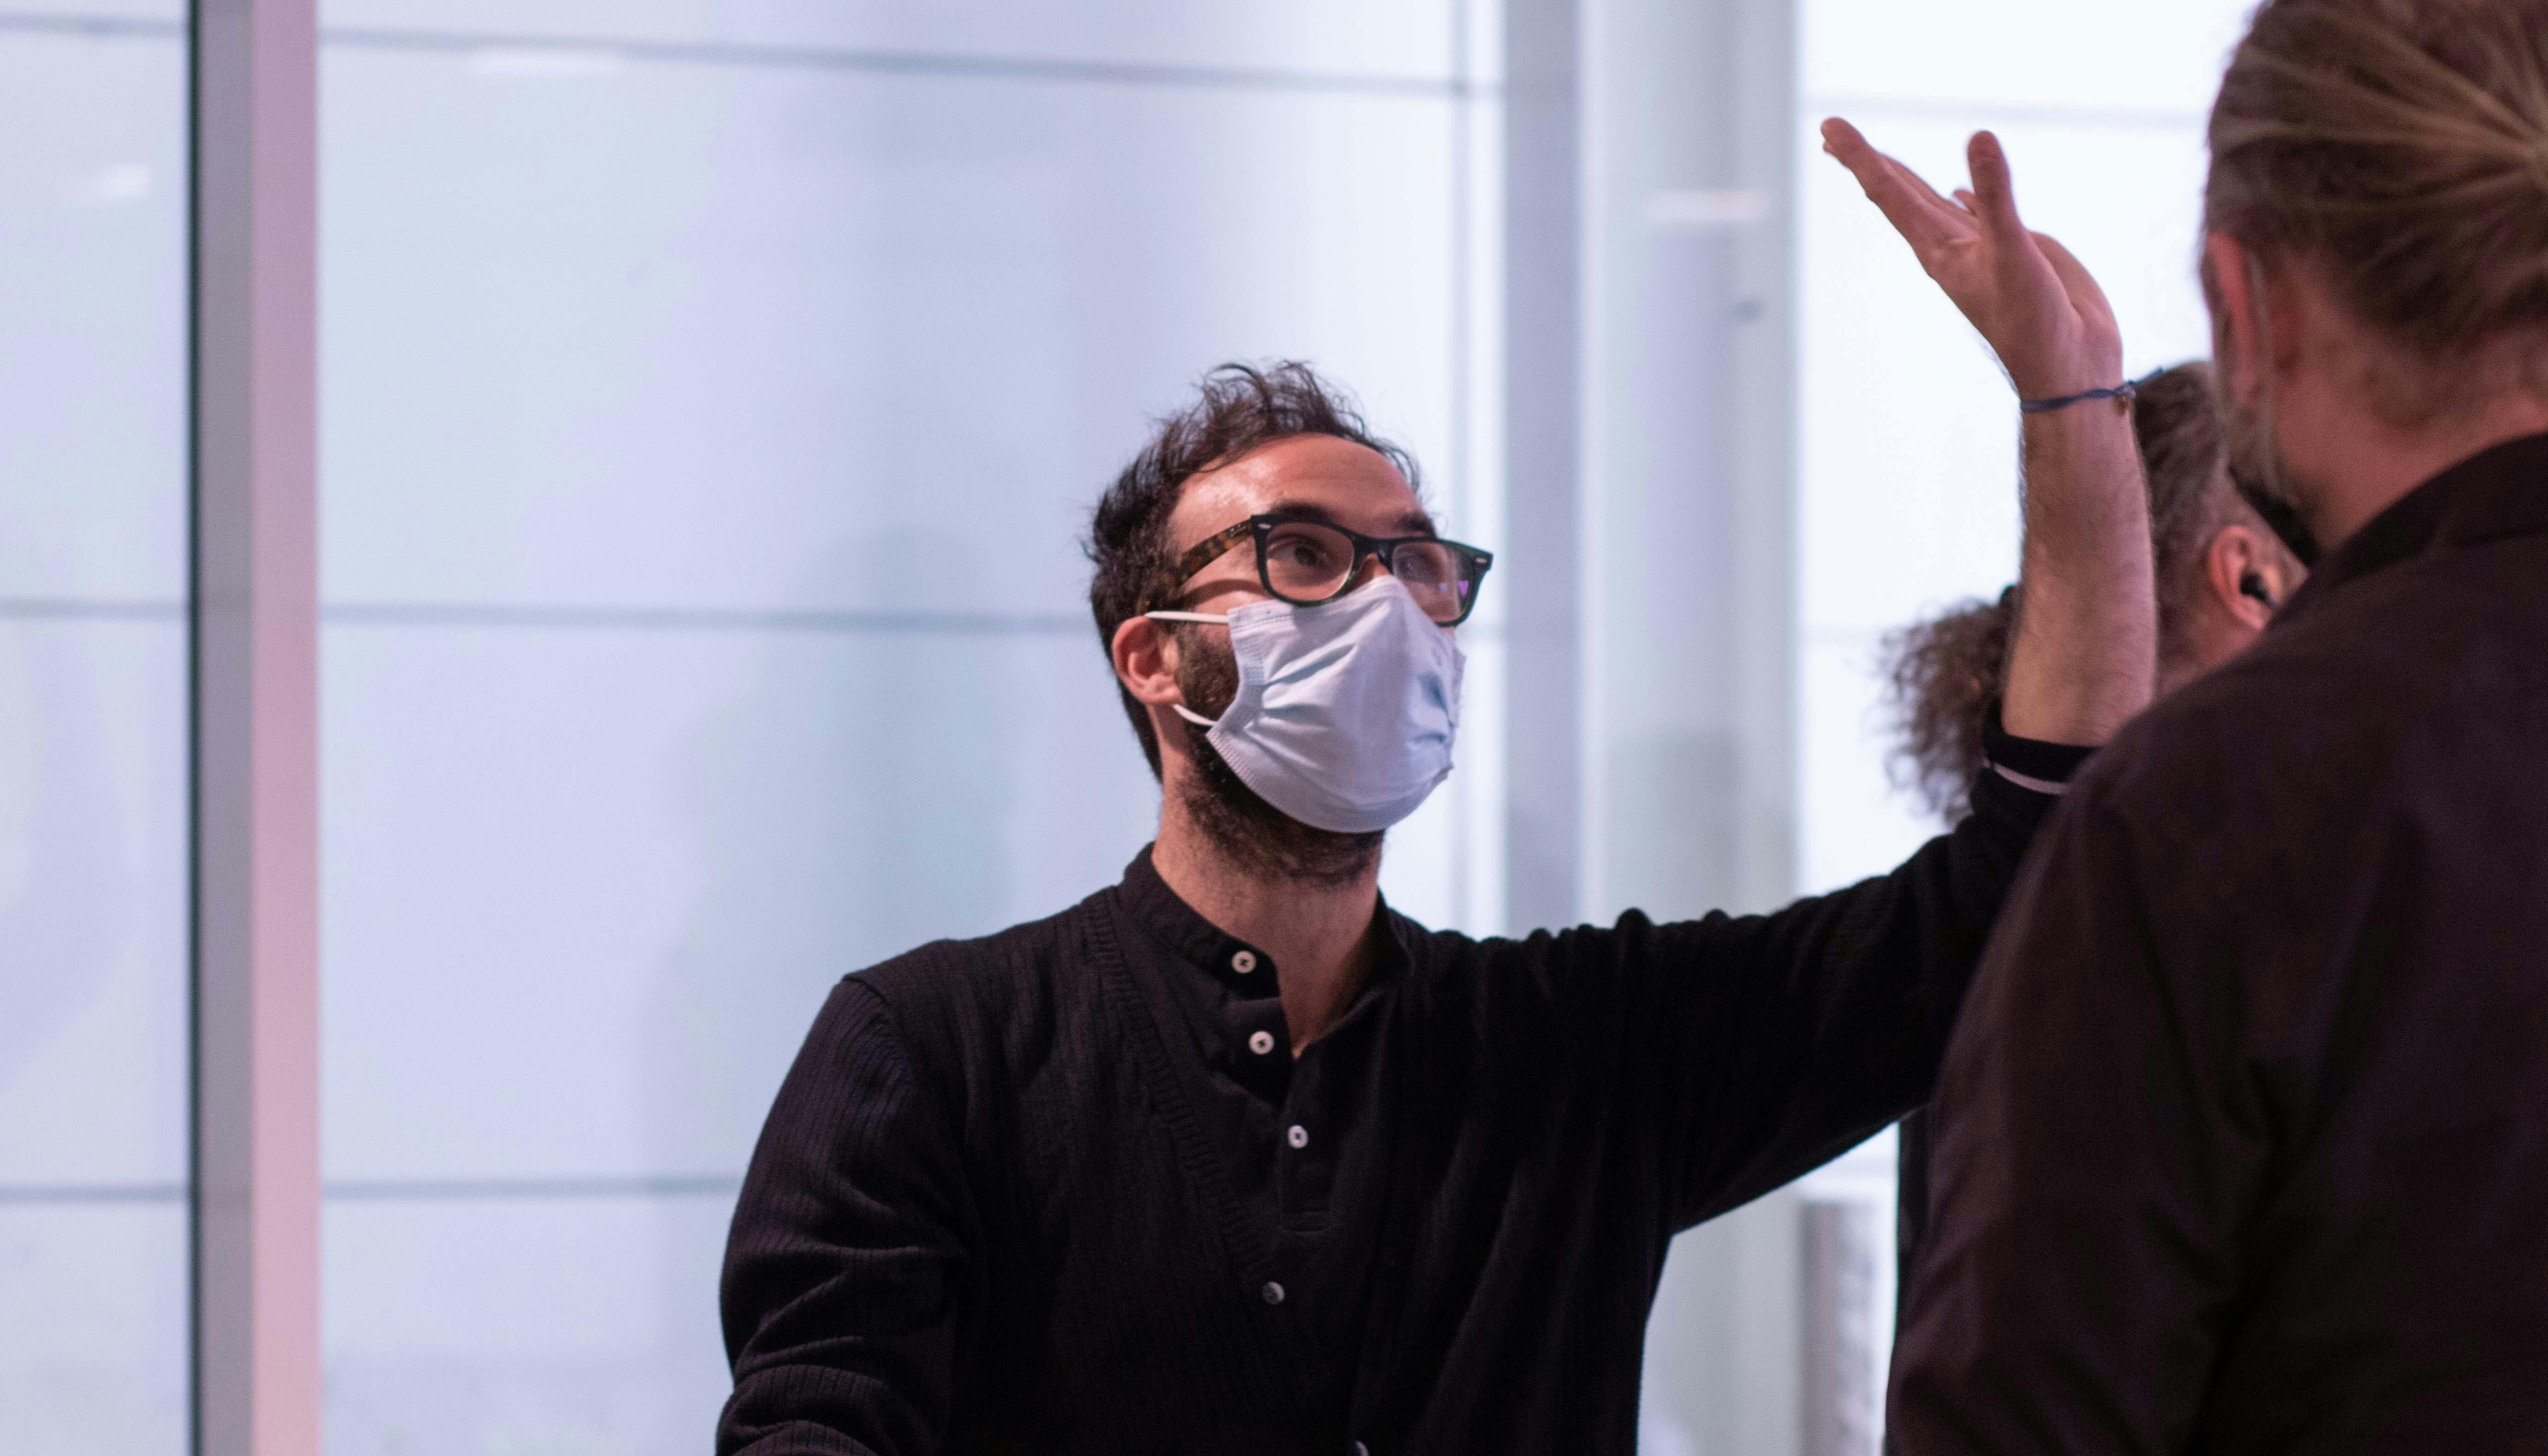 L'artista Aristide Rontini, partecipante al lab, mentre solleva il braccio sinistro verso l'alto con la mano aperta.